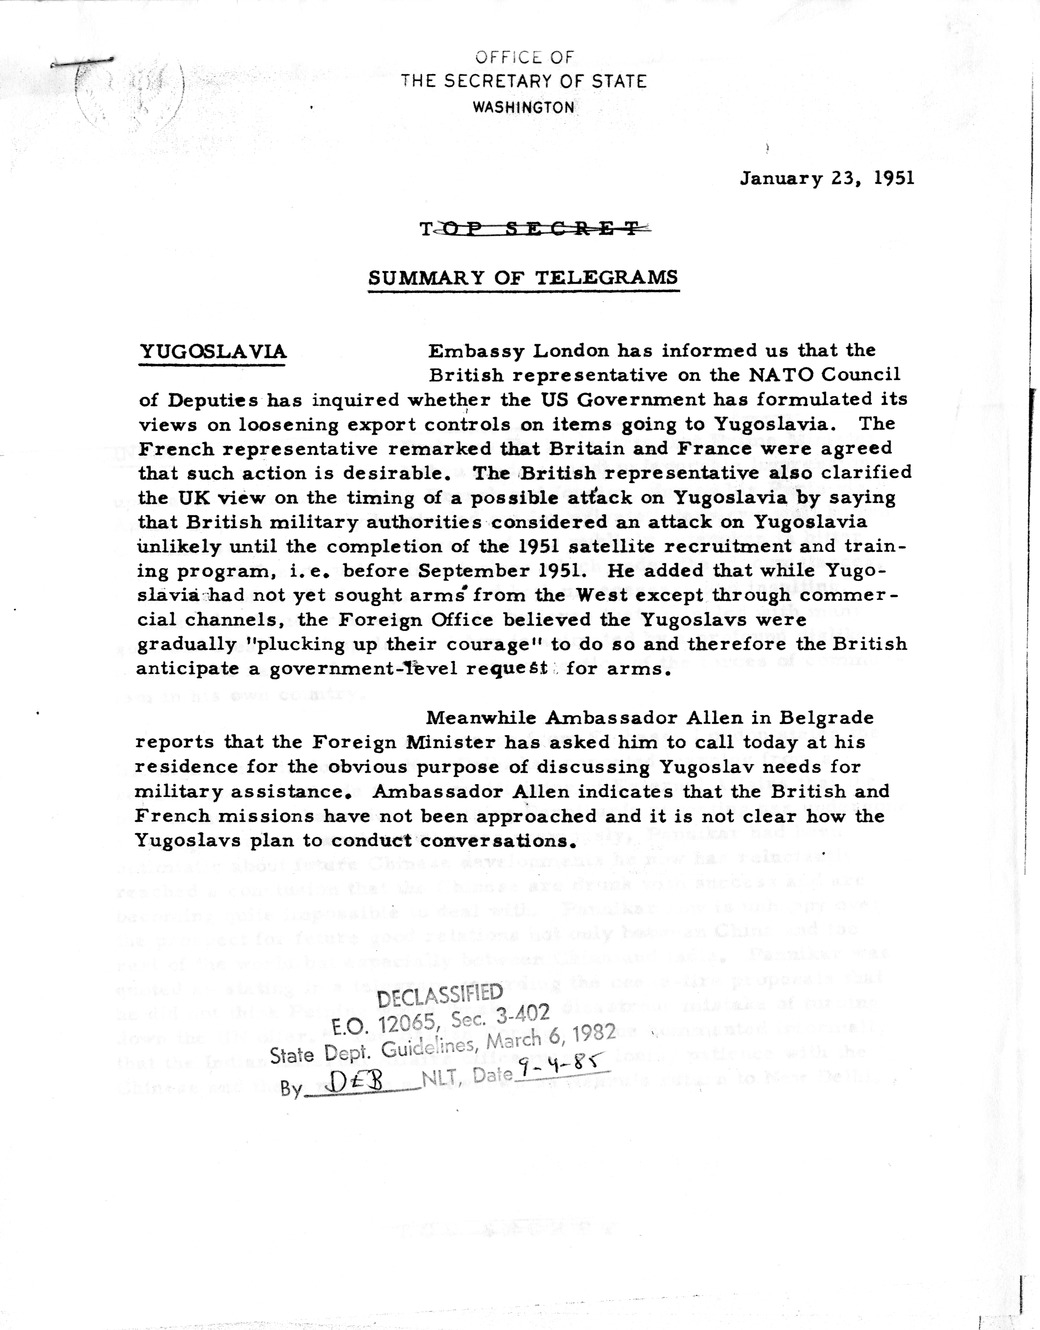 Memorandum, State Department Summary of Telegrams (Redacted)